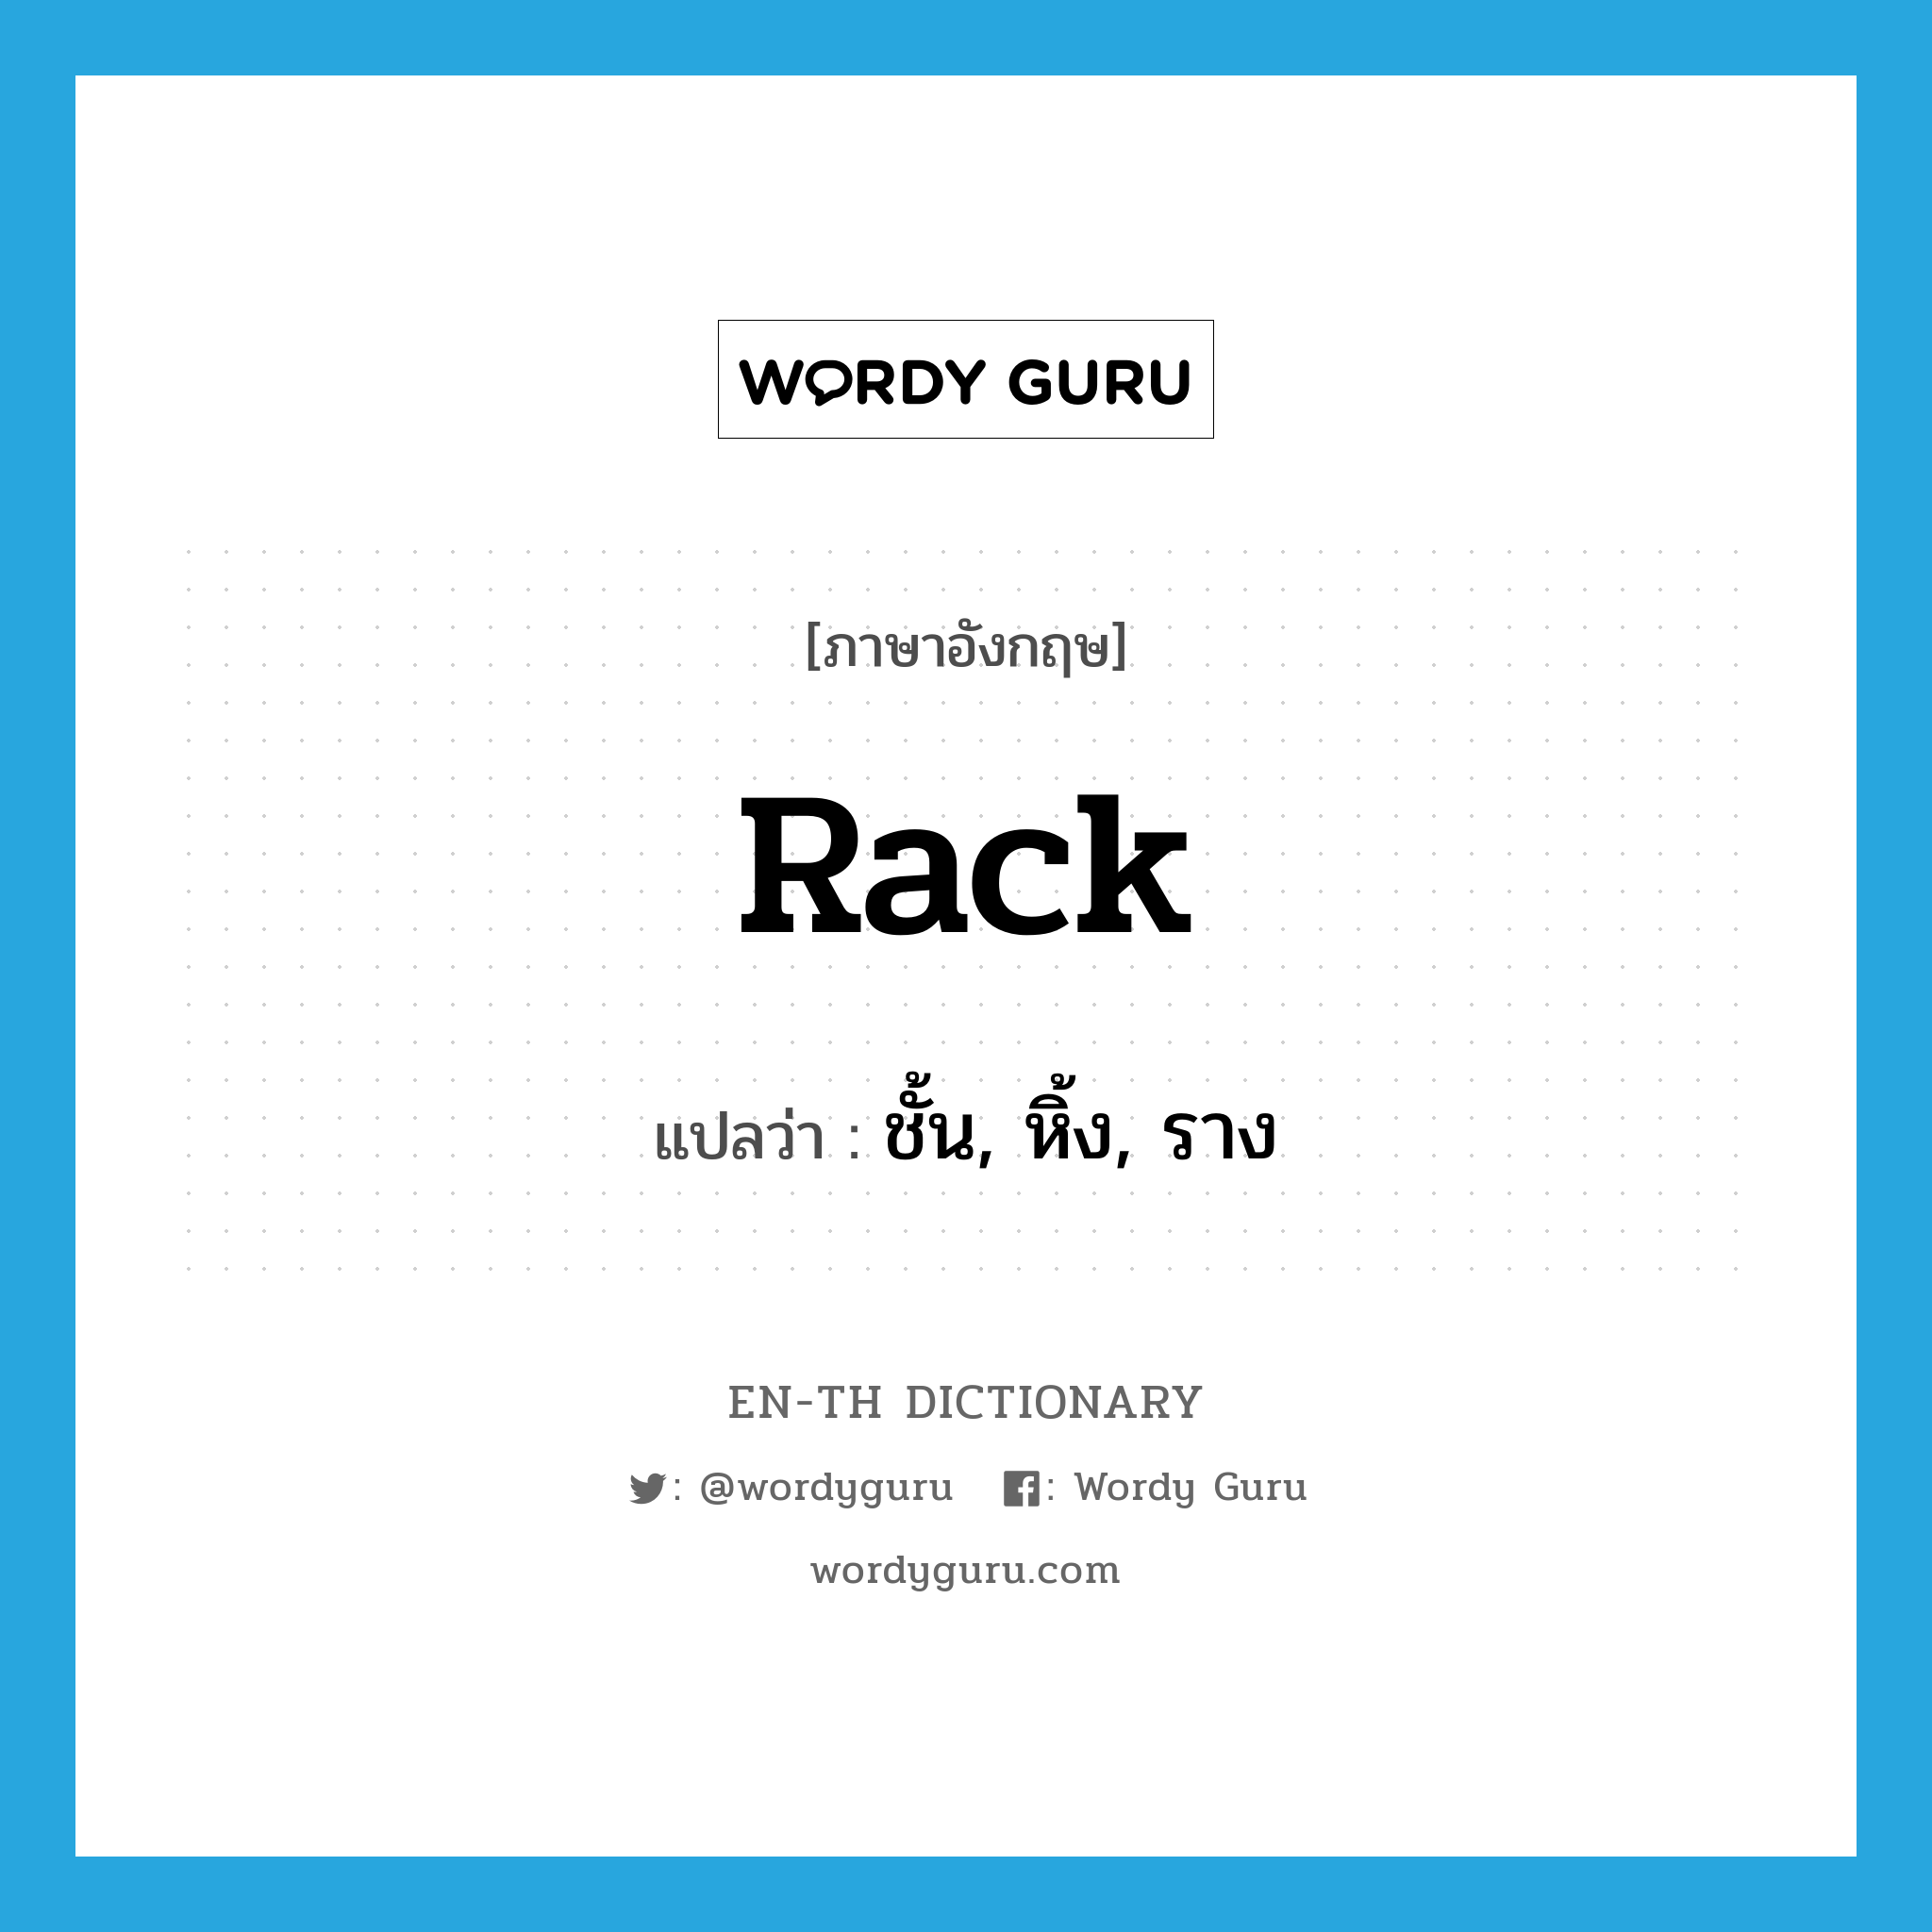 rack แปลว่า?, คำศัพท์ภาษาอังกฤษ rack แปลว่า ชั้น, หิ้ง, ราง ประเภท N หมวด N